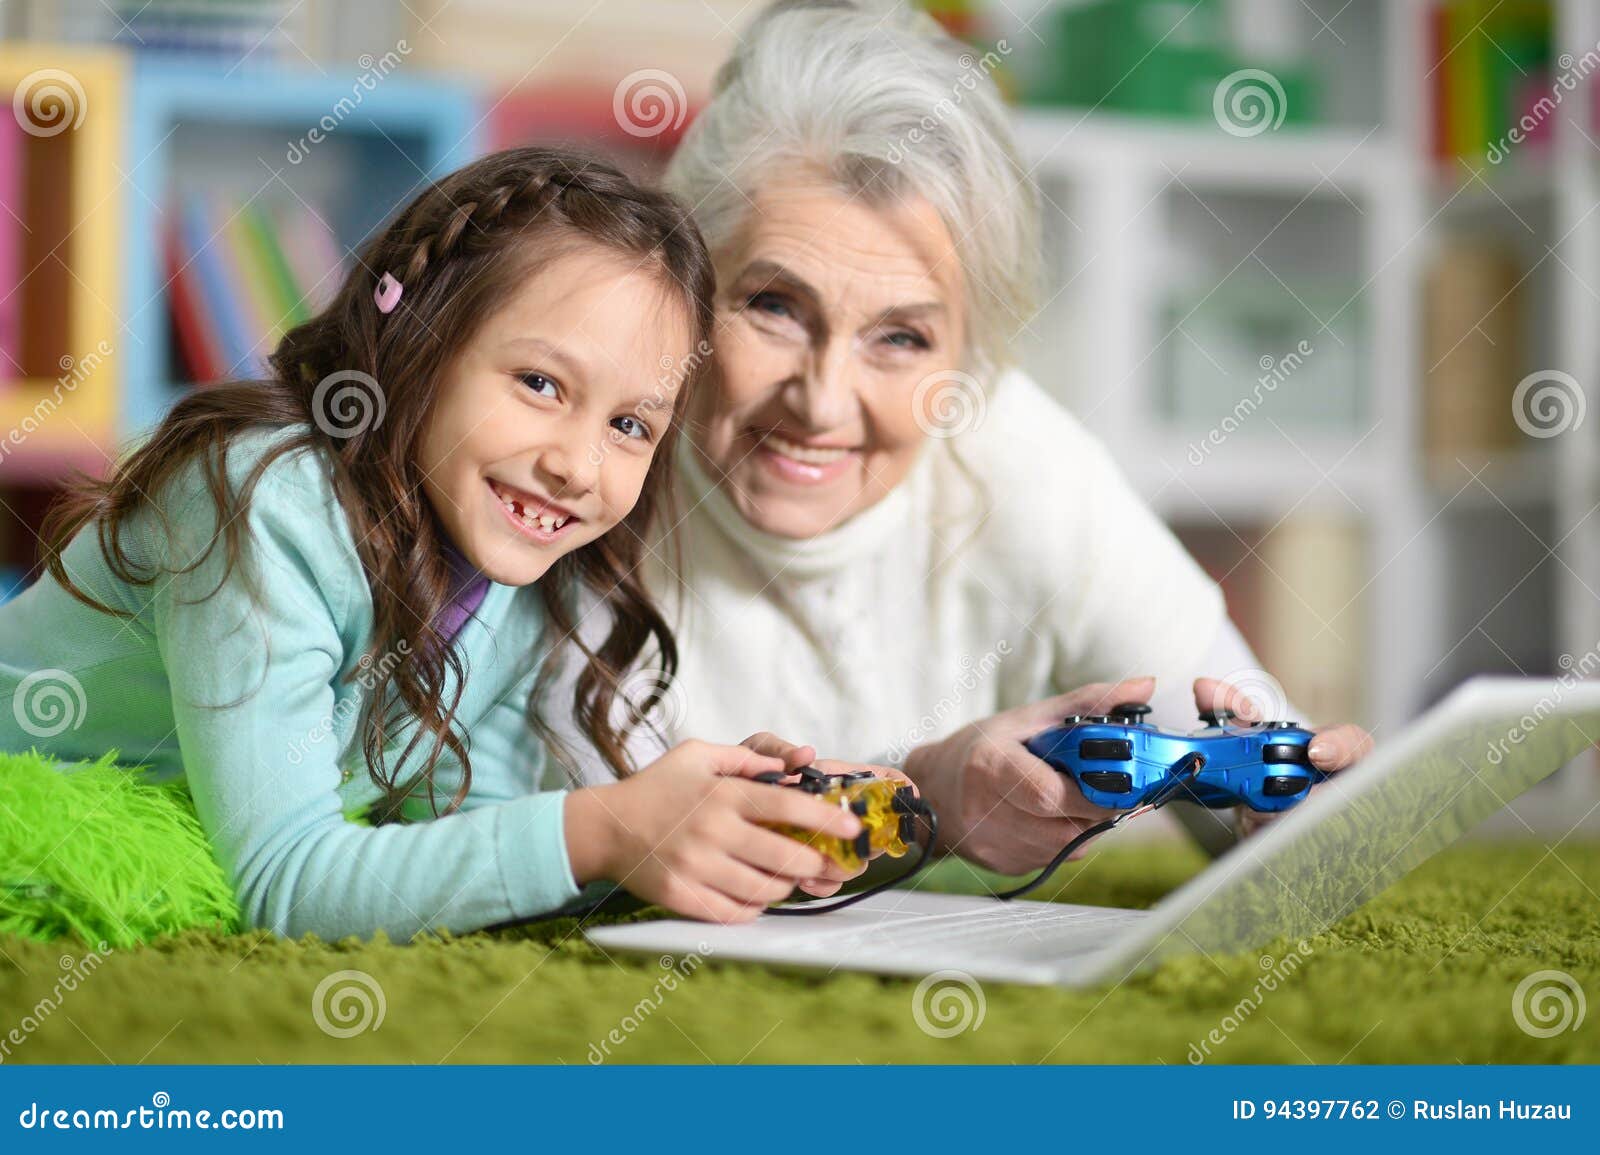 Можно бабушке играть. Во что играют бабушки. Что можно играть с бабушкой дома.